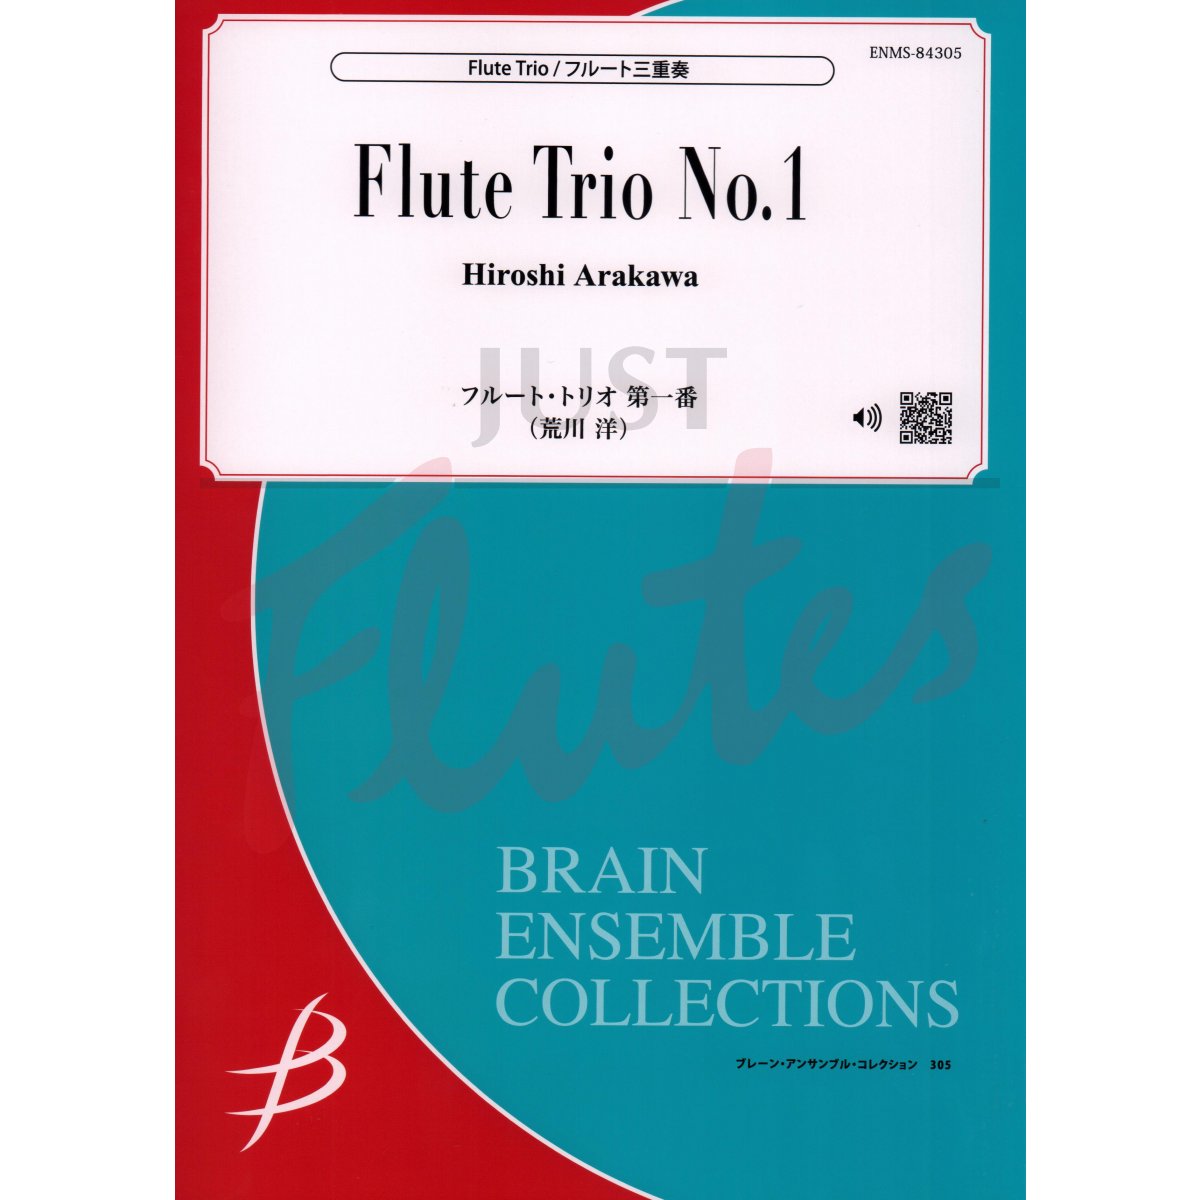 Flute Trio No 1